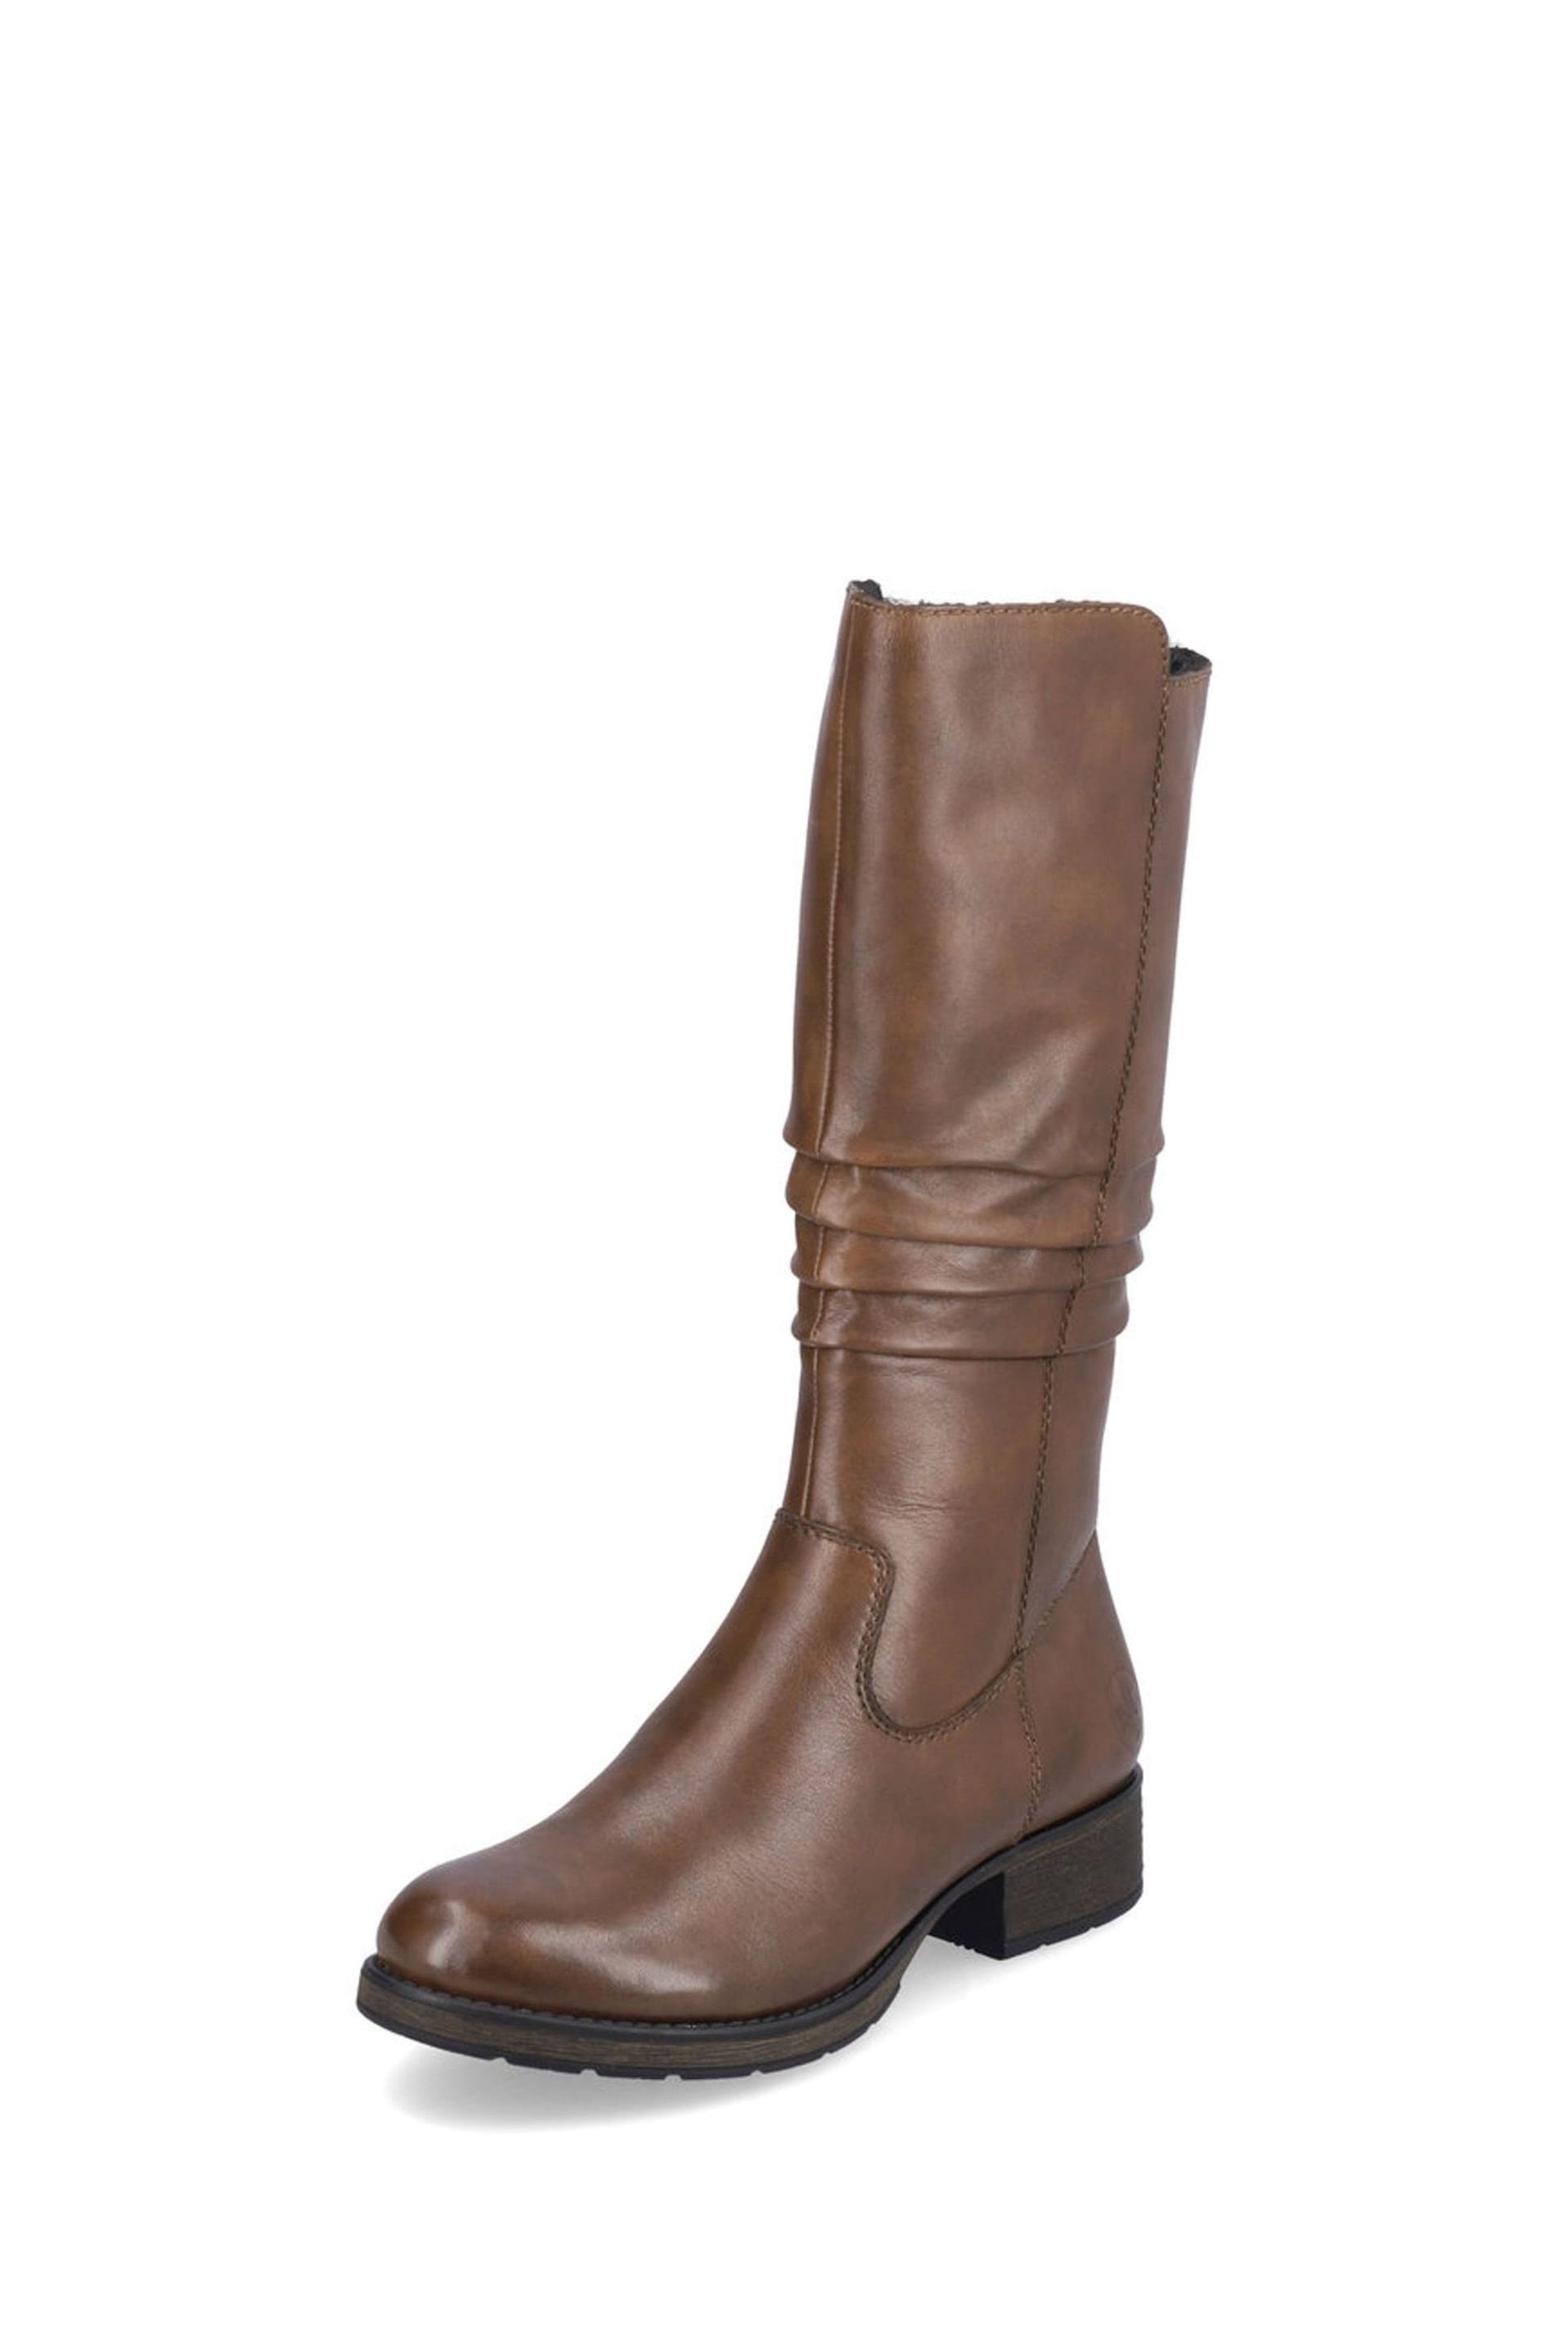 Rieker Womens Zipper Brown Boots - Image 4 of 10